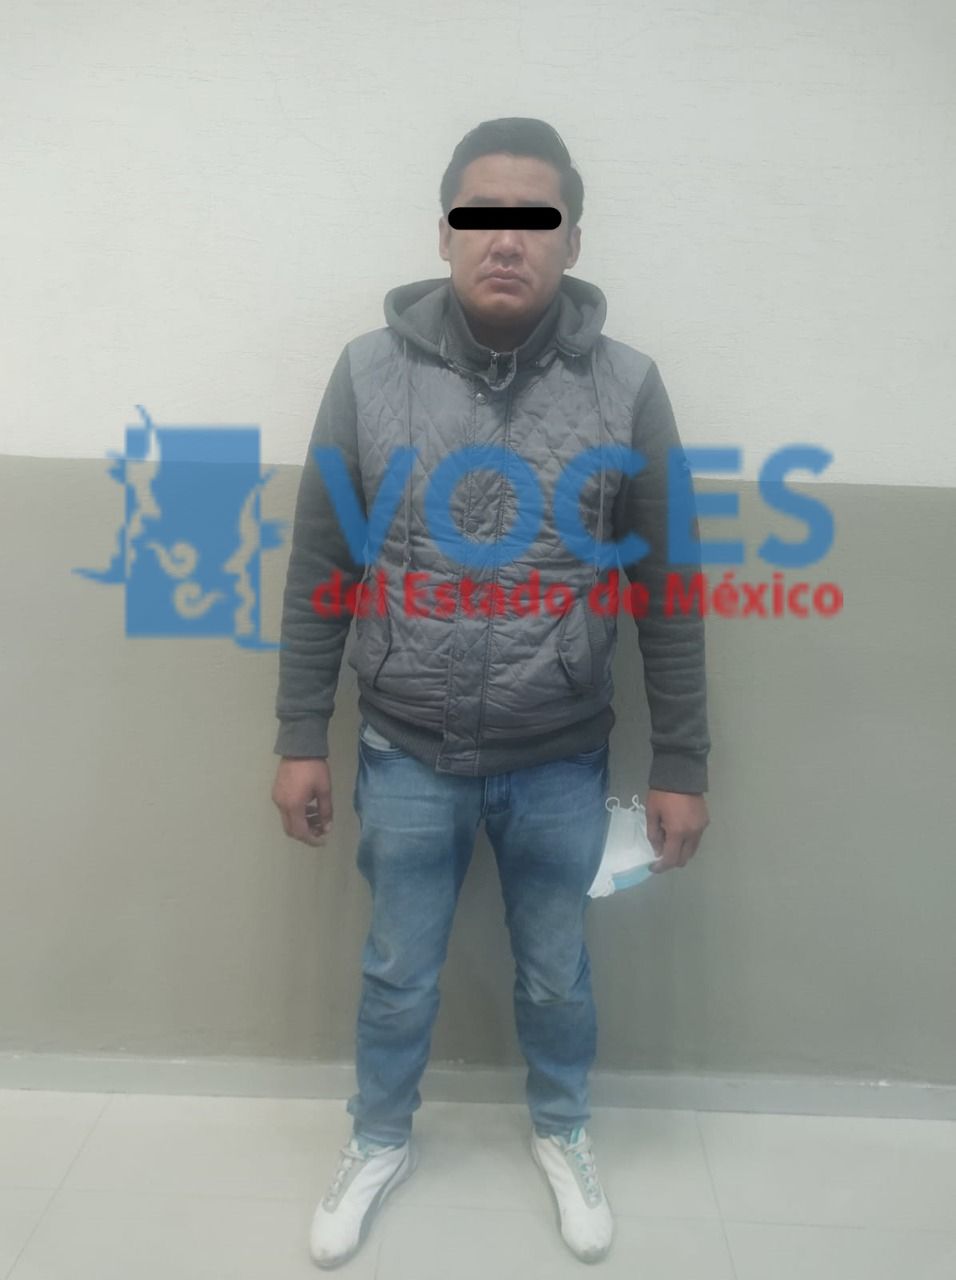 CAPTAN DESDE EL C4 AGRESION A MUJER EN TEXCOCO, POLICIAS ASEGURAN A PRESUNTO RESPONSABLE